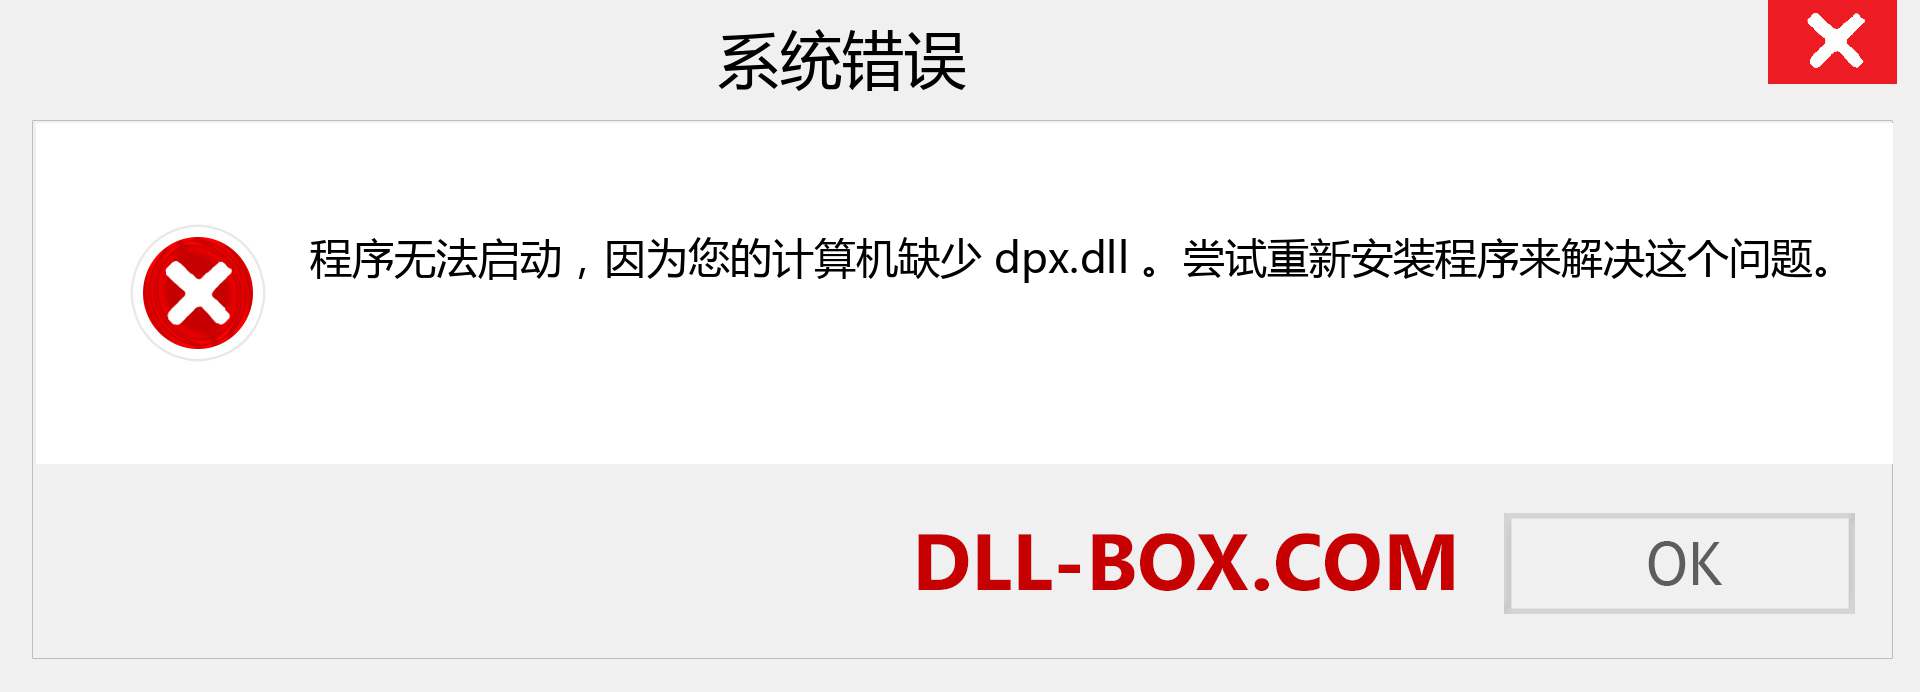 dpx.dll 文件丢失？。 适用于 Windows 7、8、10 的下载 - 修复 Windows、照片、图像上的 dpx dll 丢失错误